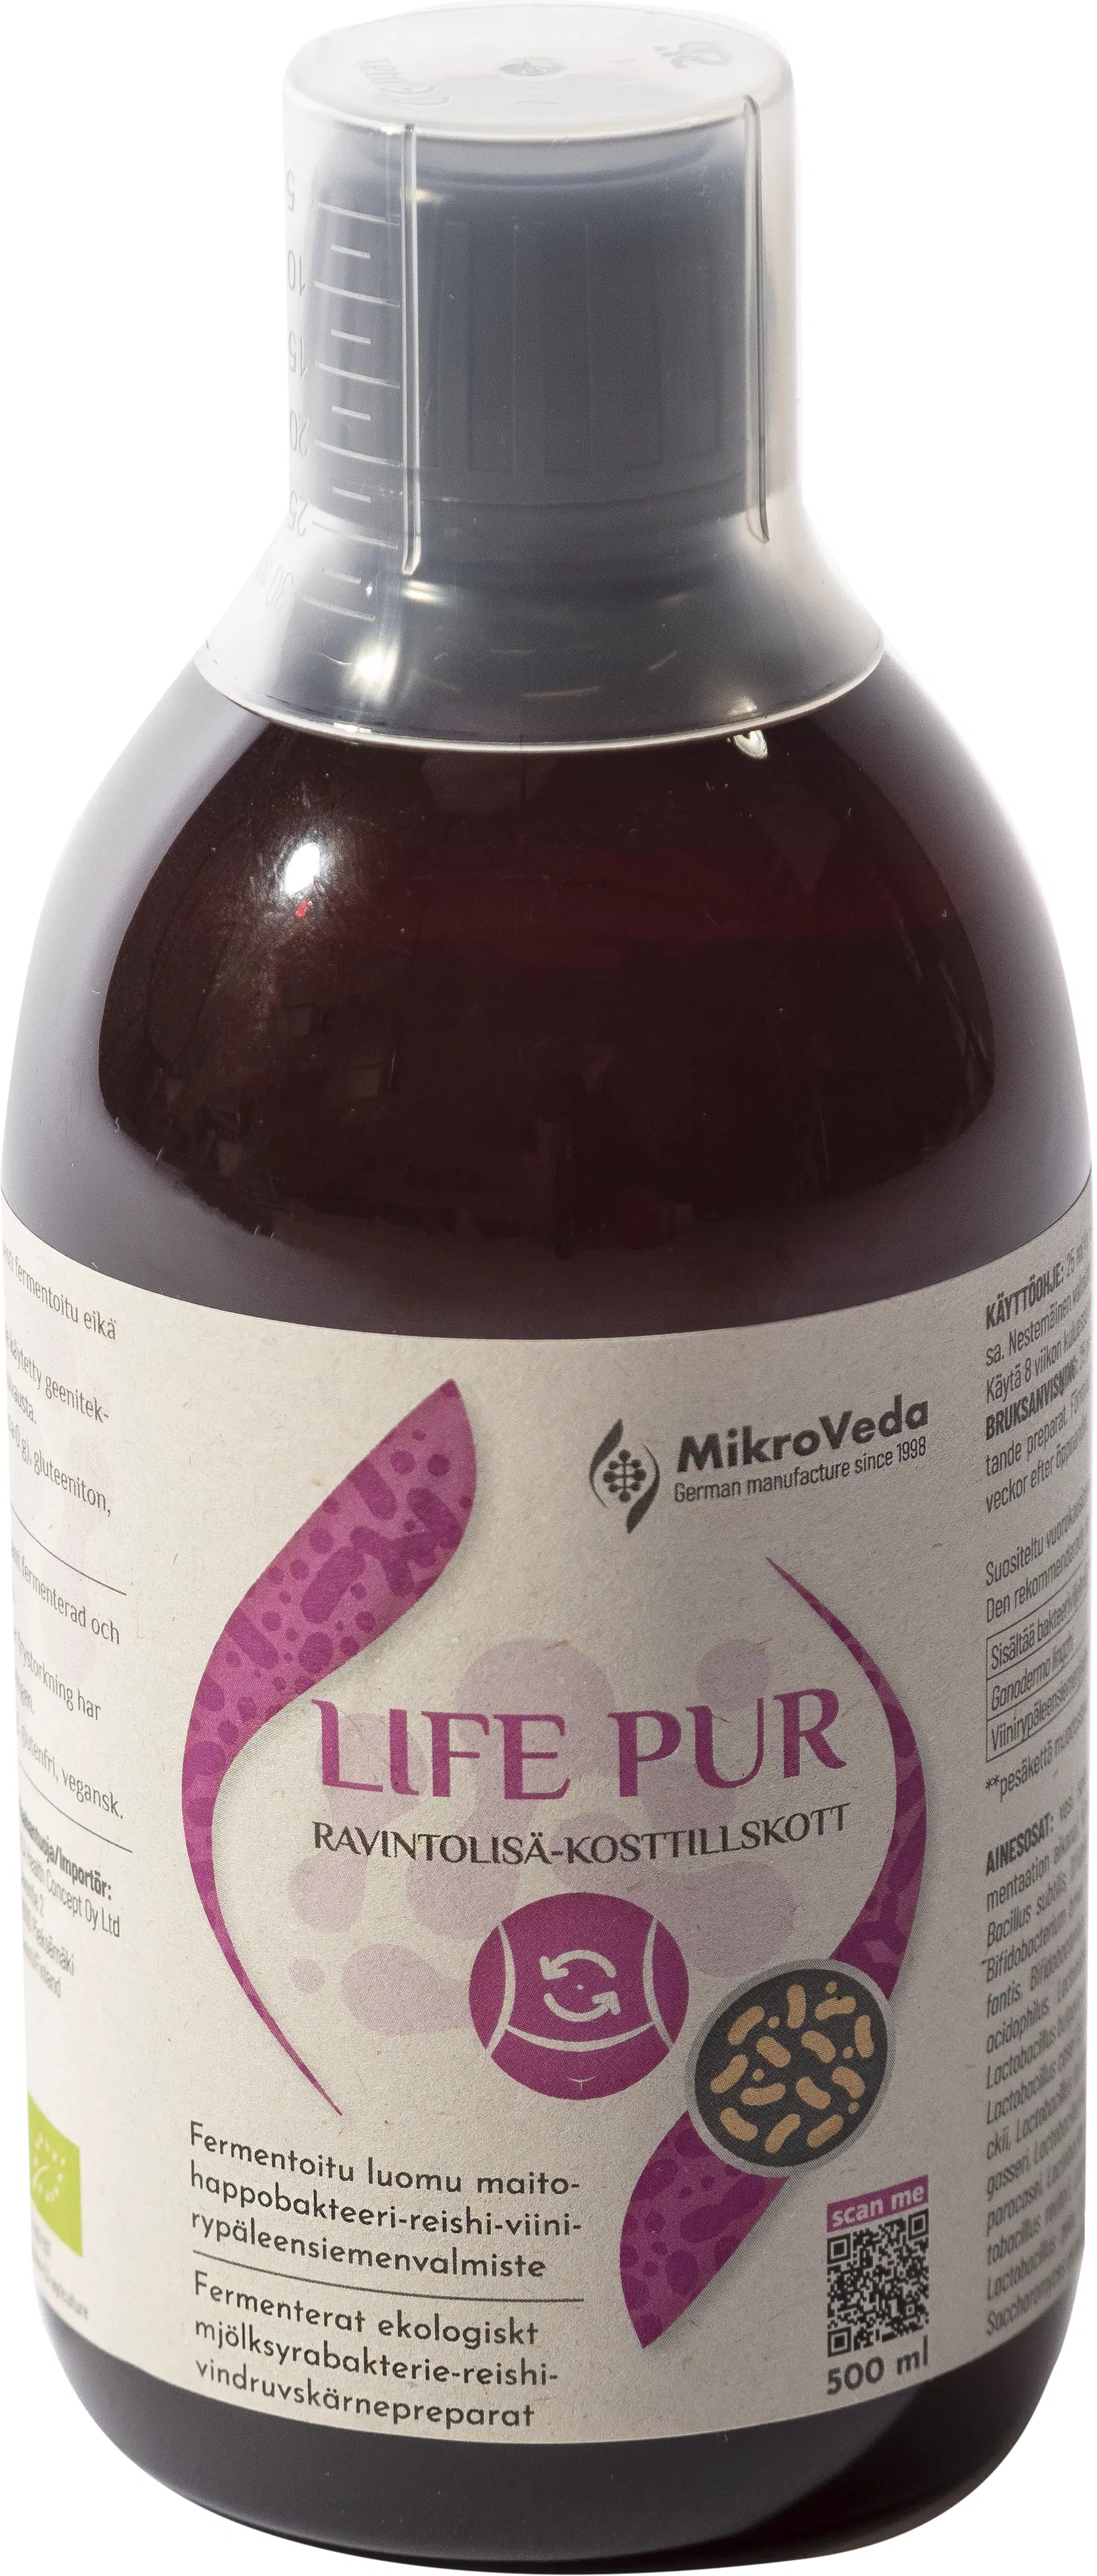 MikroVeda Life Pur maitohappobakteeri-reishi-viinirypäleensiemenvalmiste ravintolisä 500 ml